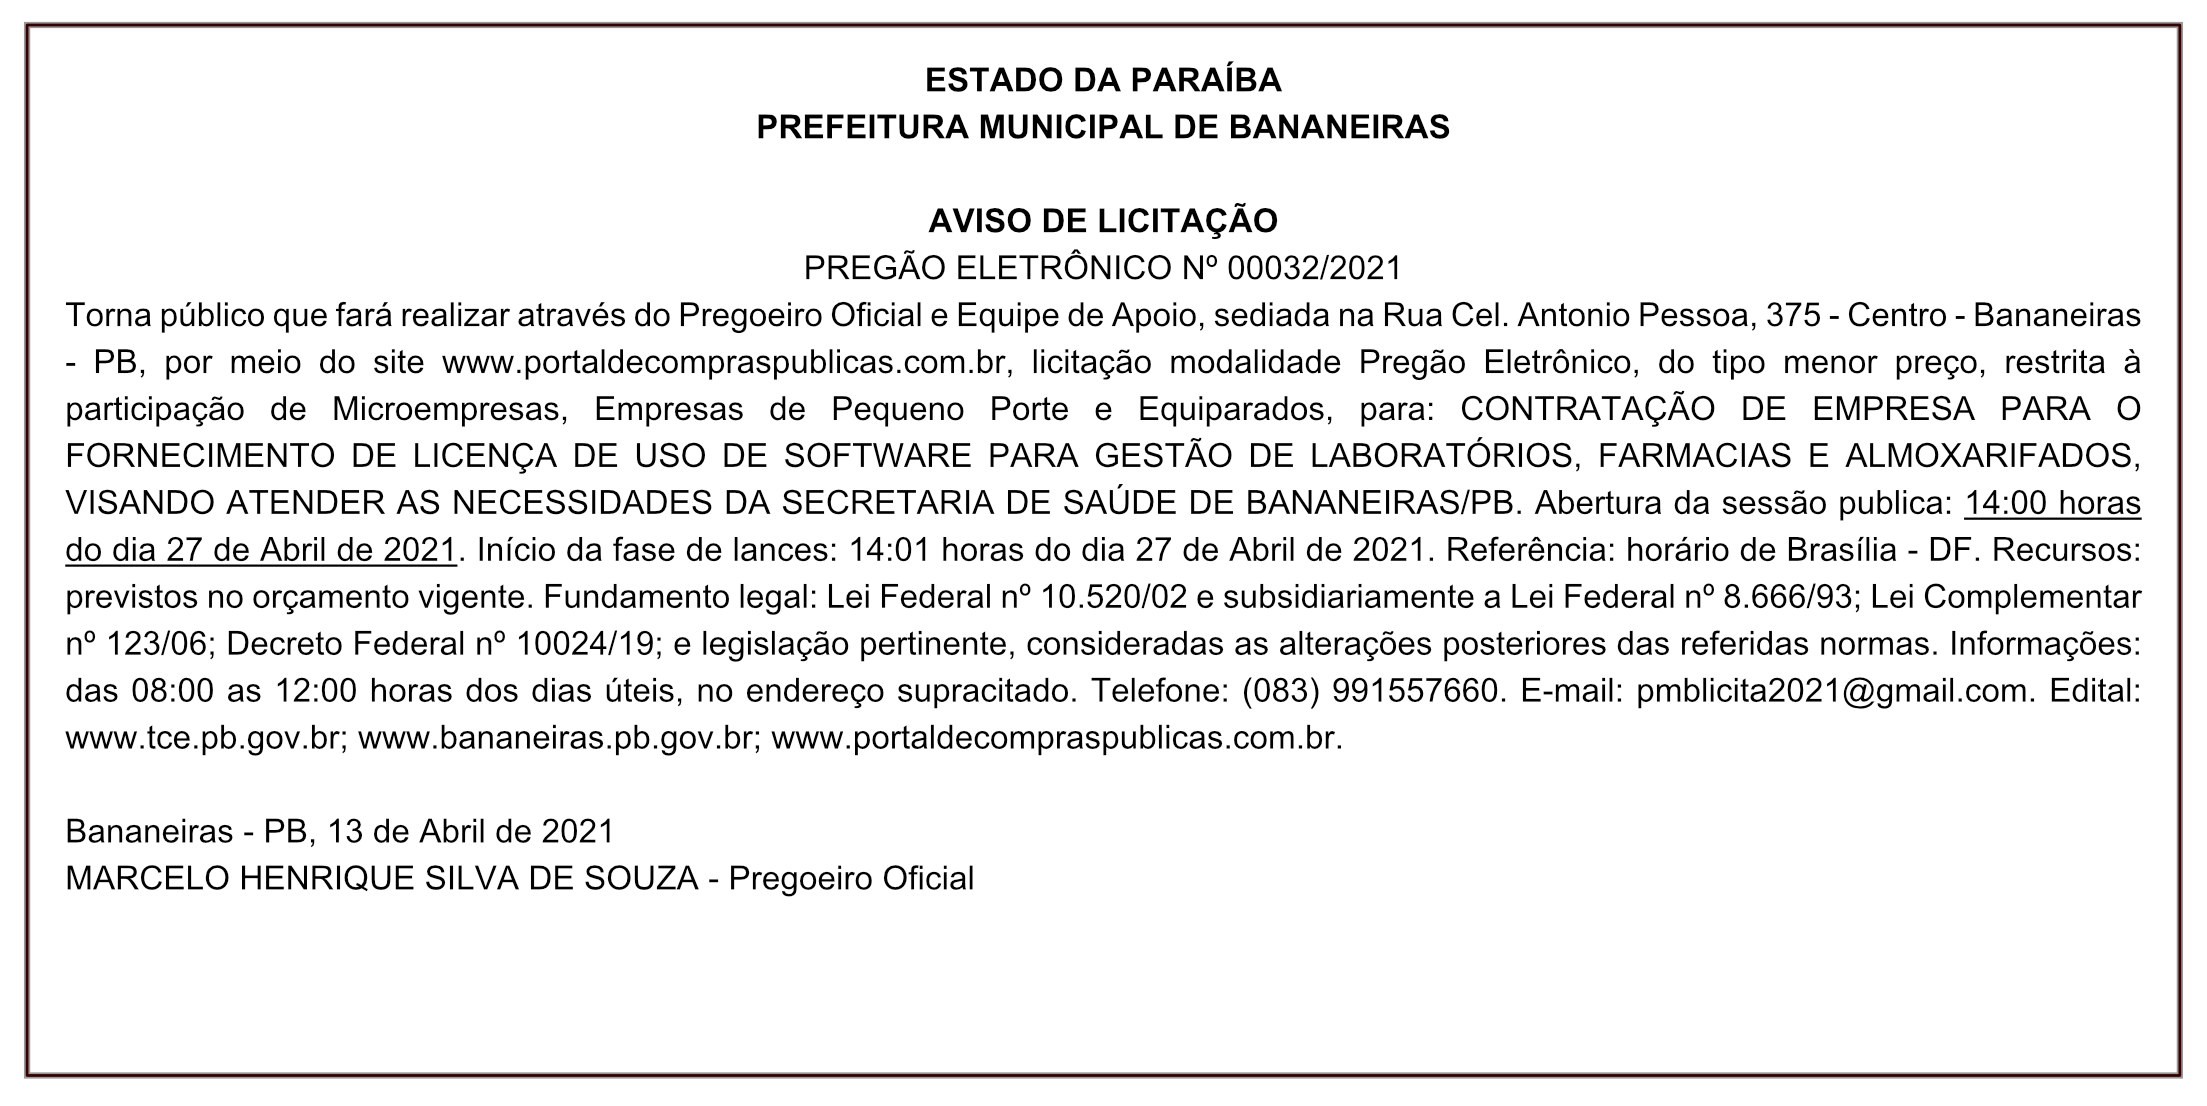 PREFEITURA MUNICIPAL DE BANANEIRAS – AVISO DE LICITAÇÃO PREGÃO ELETRÔNICO Nº 00032/2021